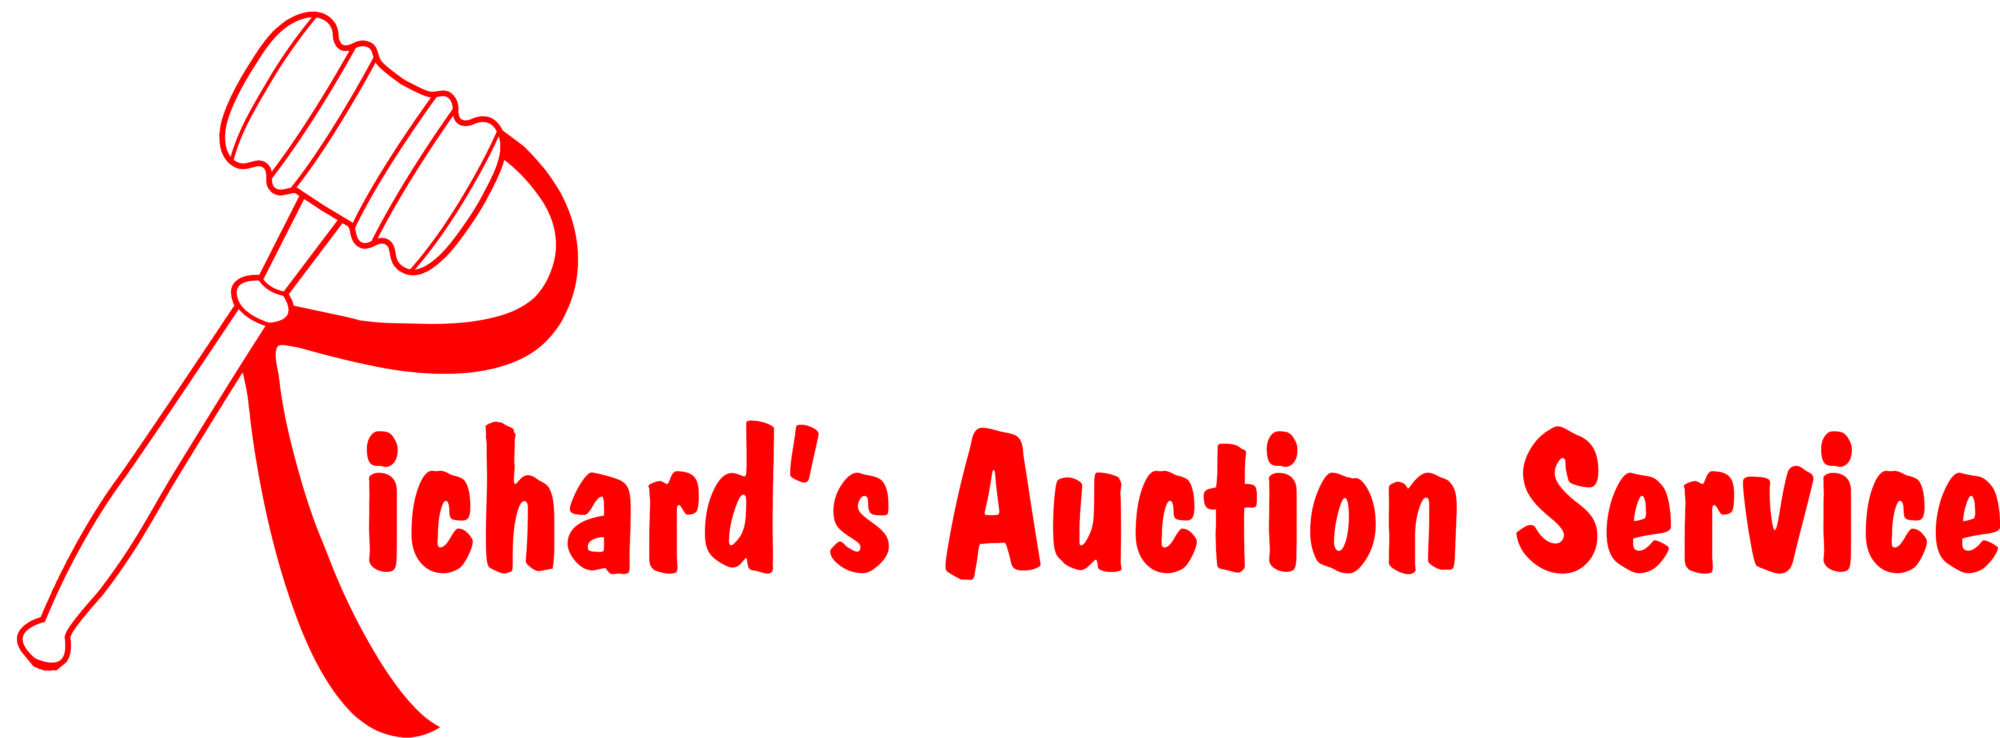 Richard's Auction Service